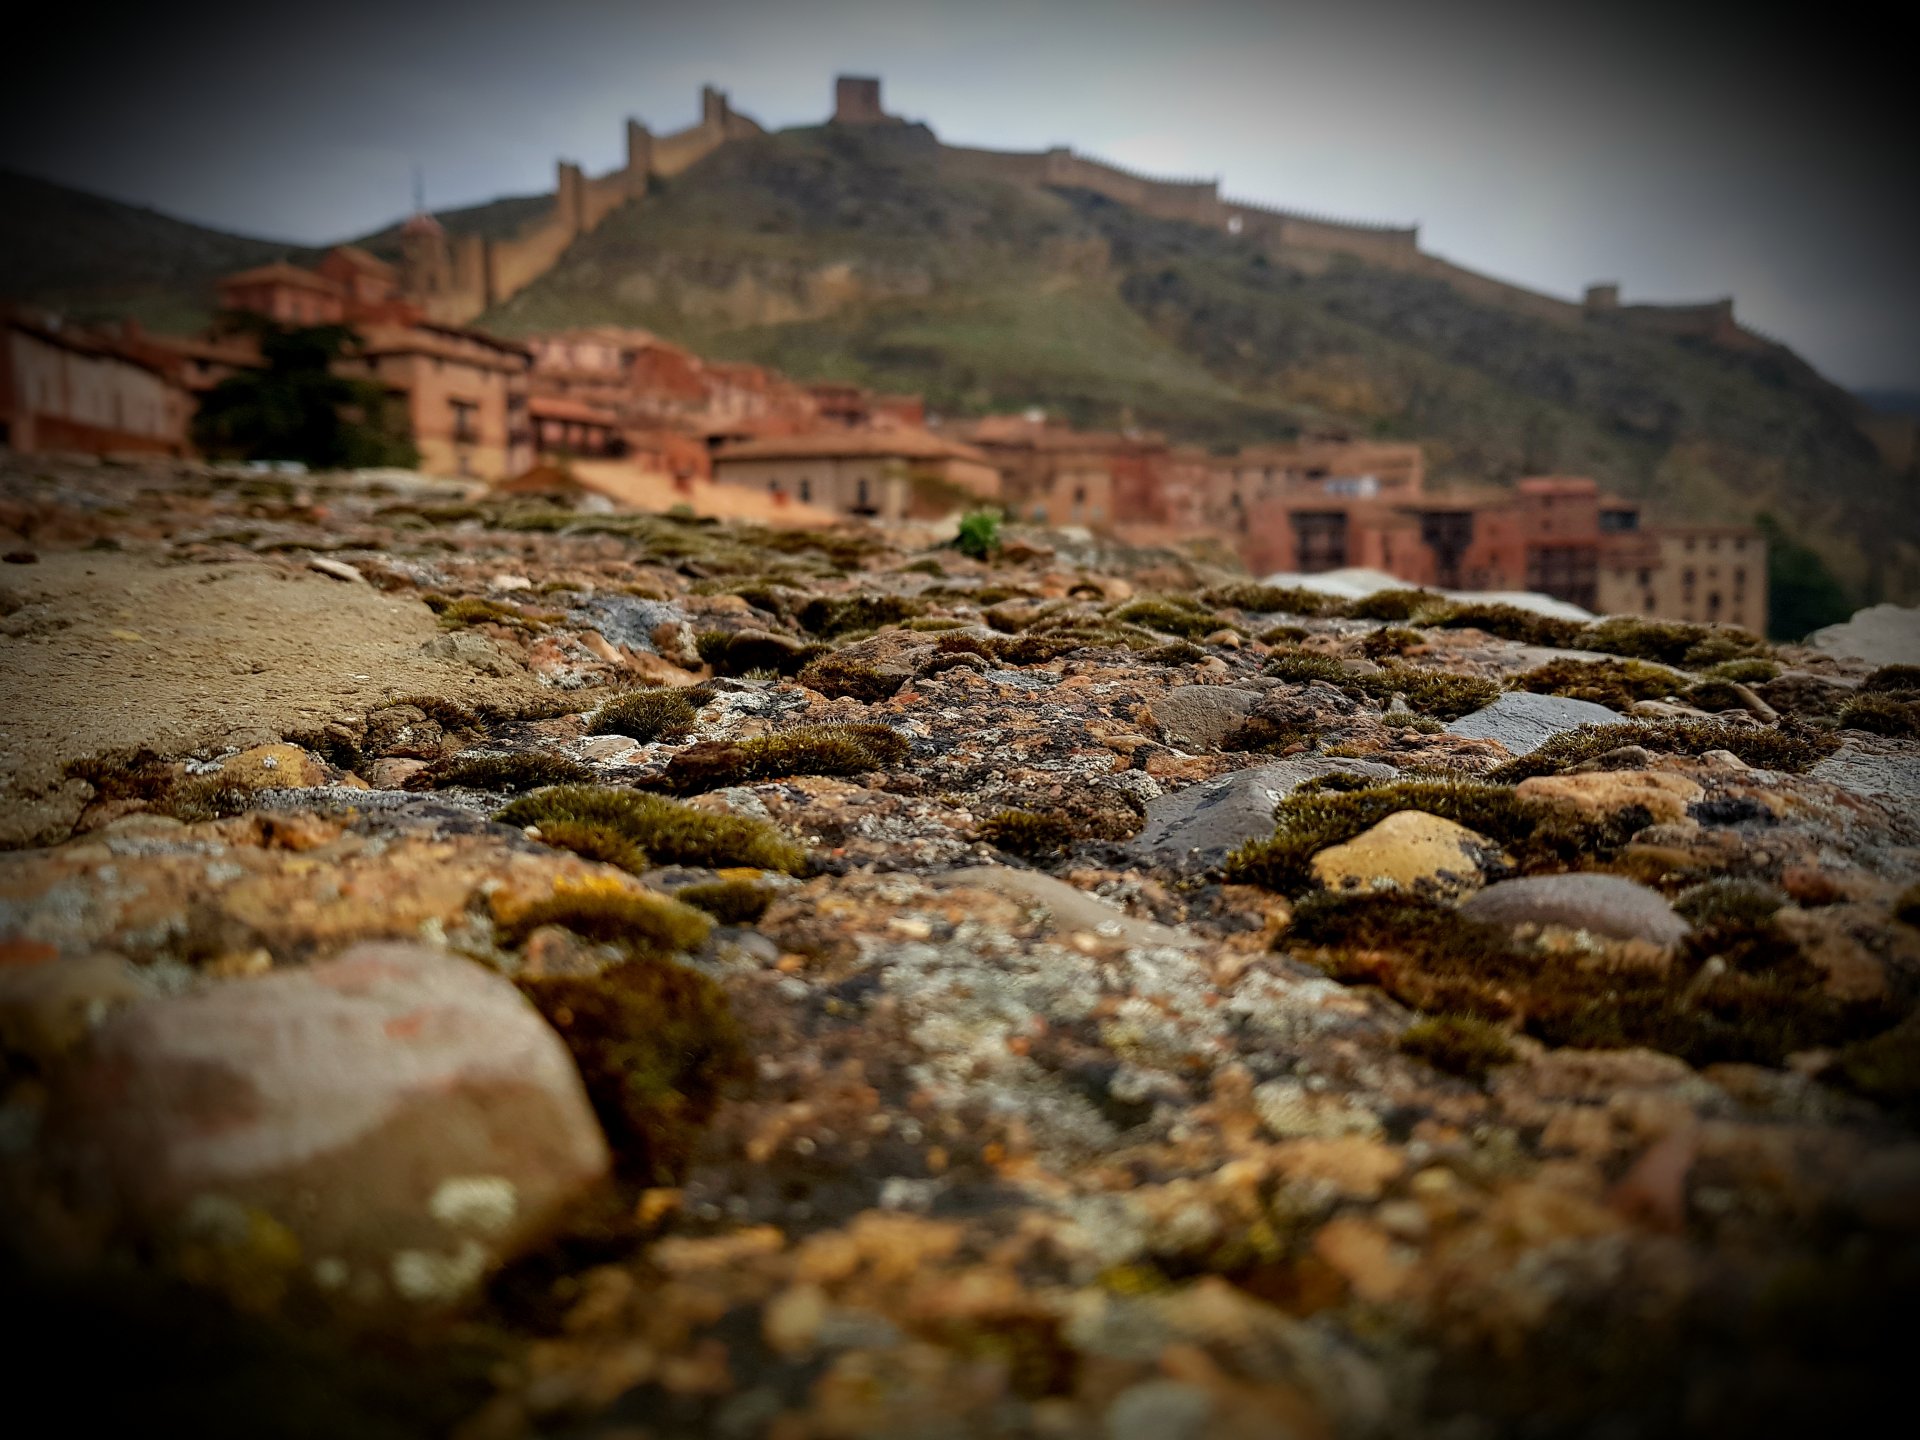 #PanorámicasQueEnamoran #Albarracín #CasaMuseoAlbarracín #Teruel de #VisitaGuiada….#ViveTuExperiencia!